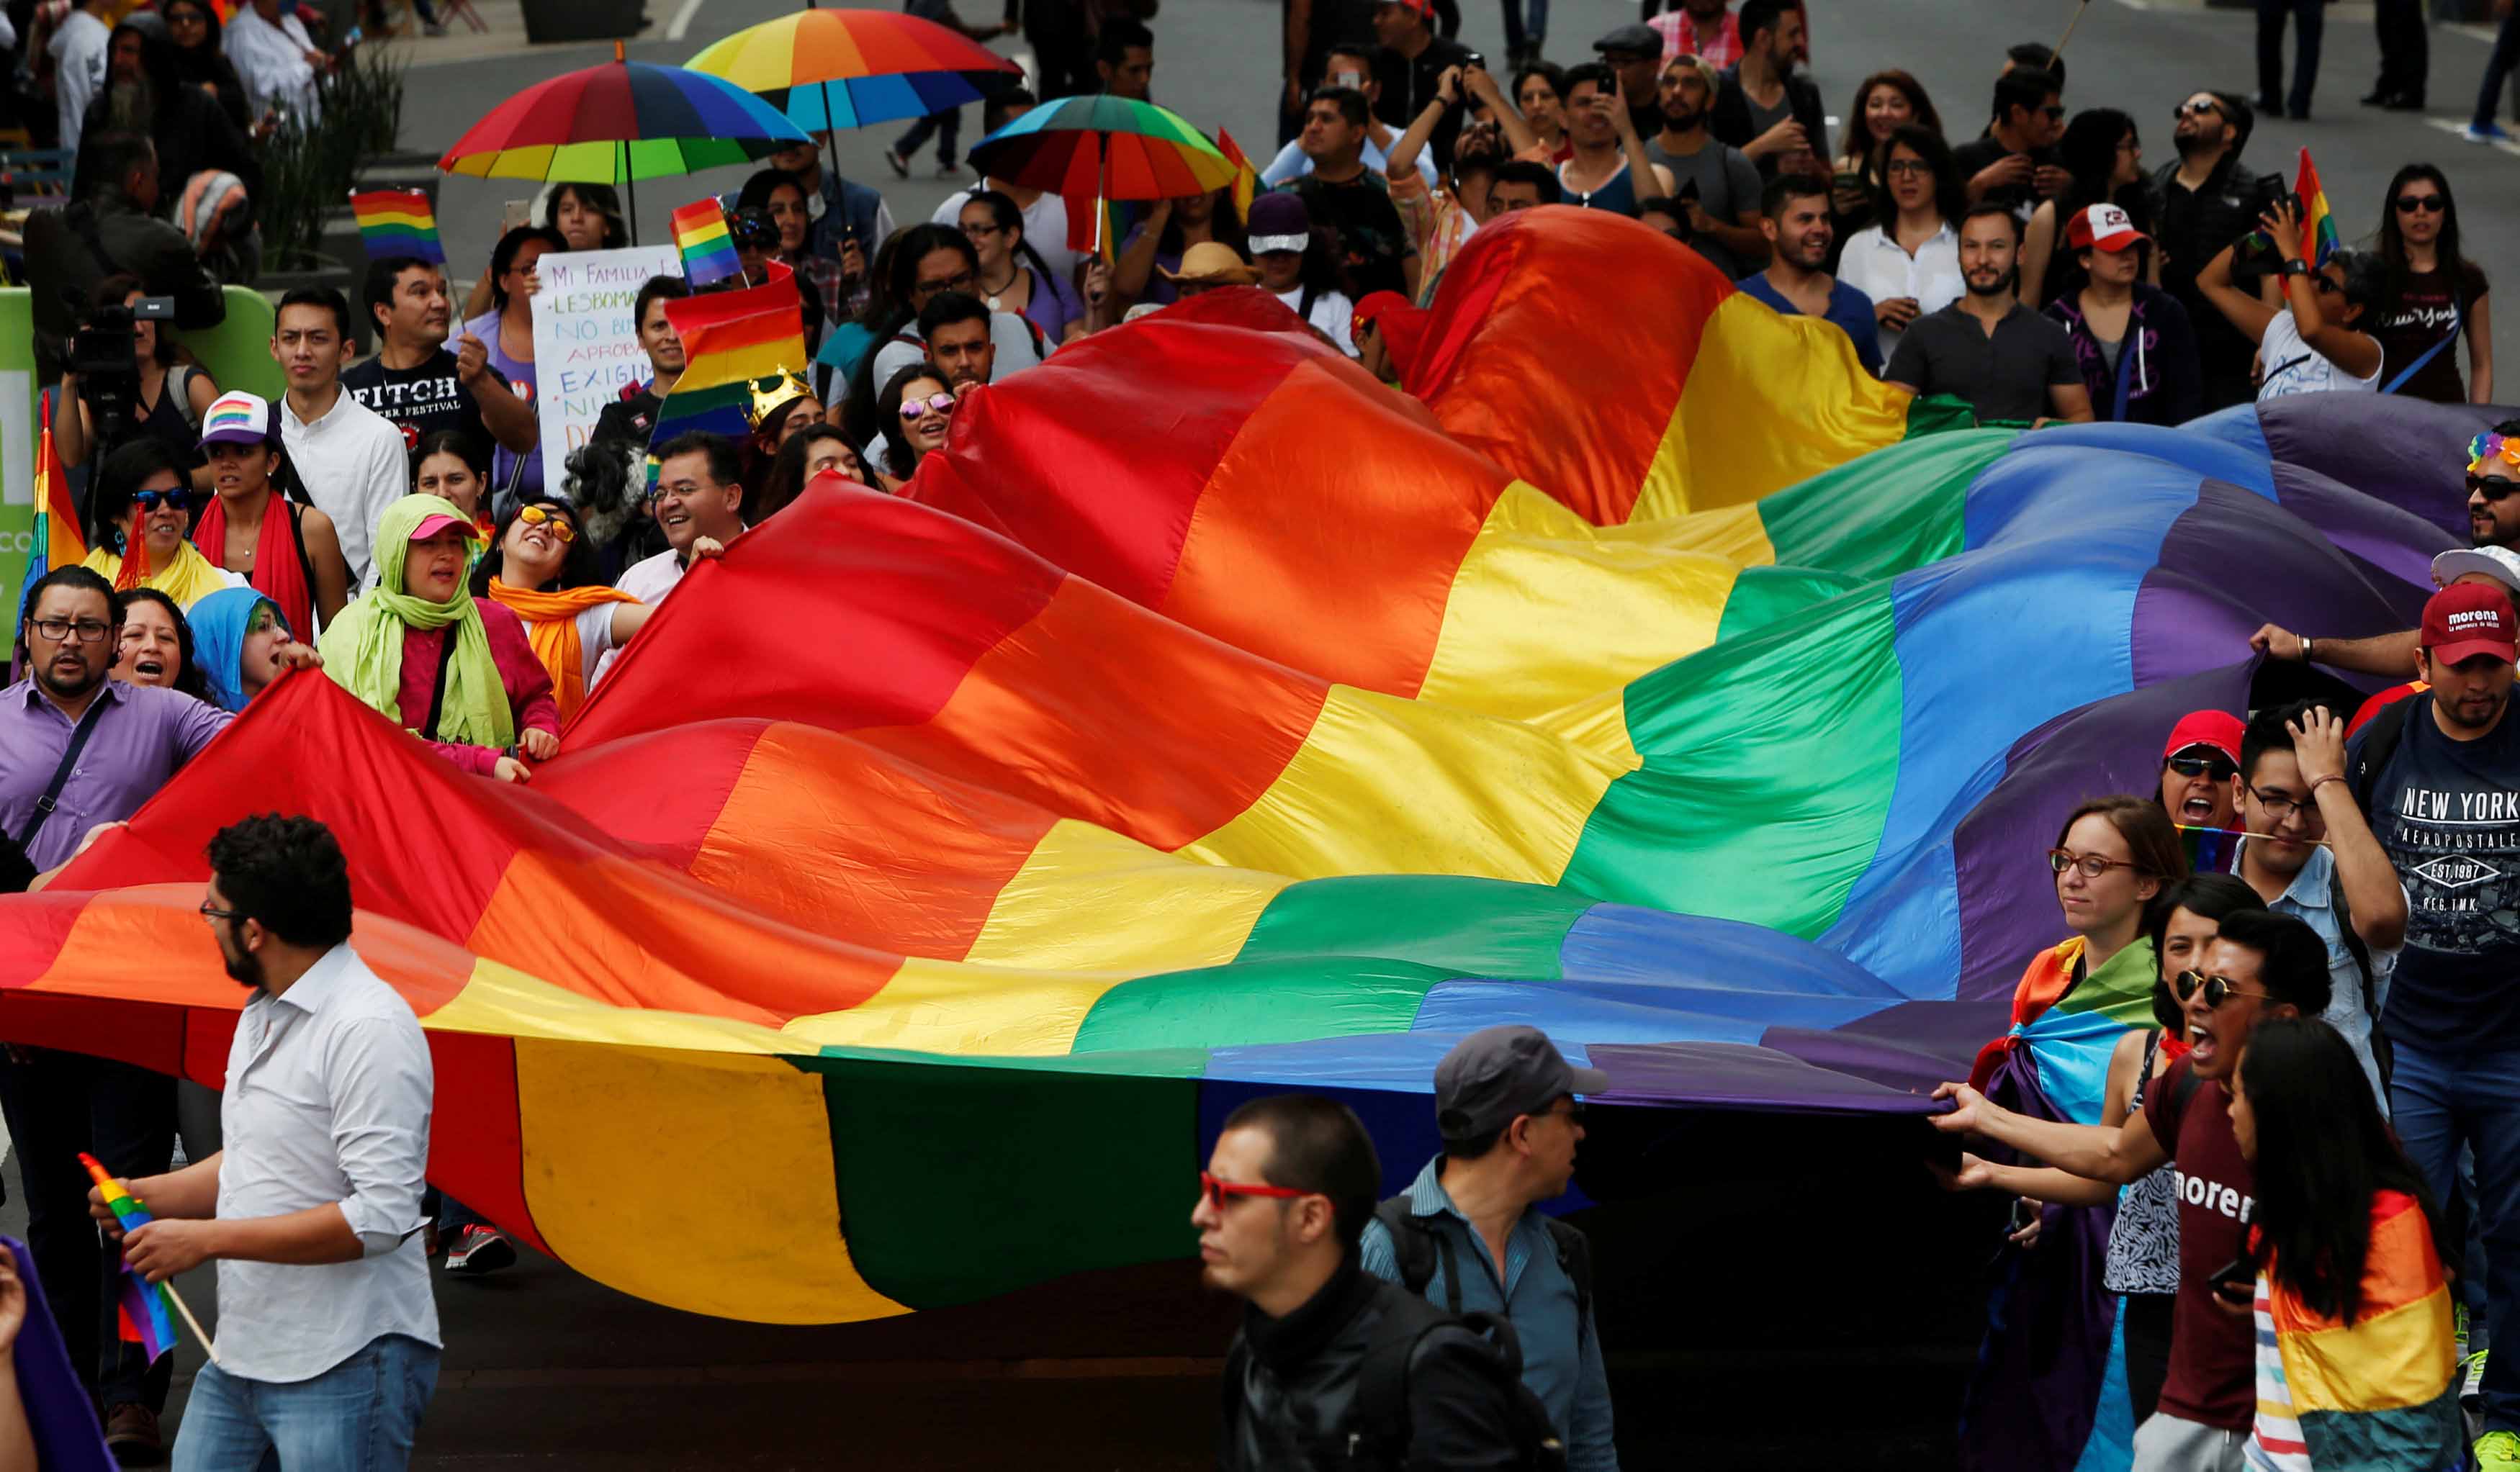 Las agencias de la organización en México solicitaron respeto y condenaron cualquier expresión negativa contra la comunidad homosexual